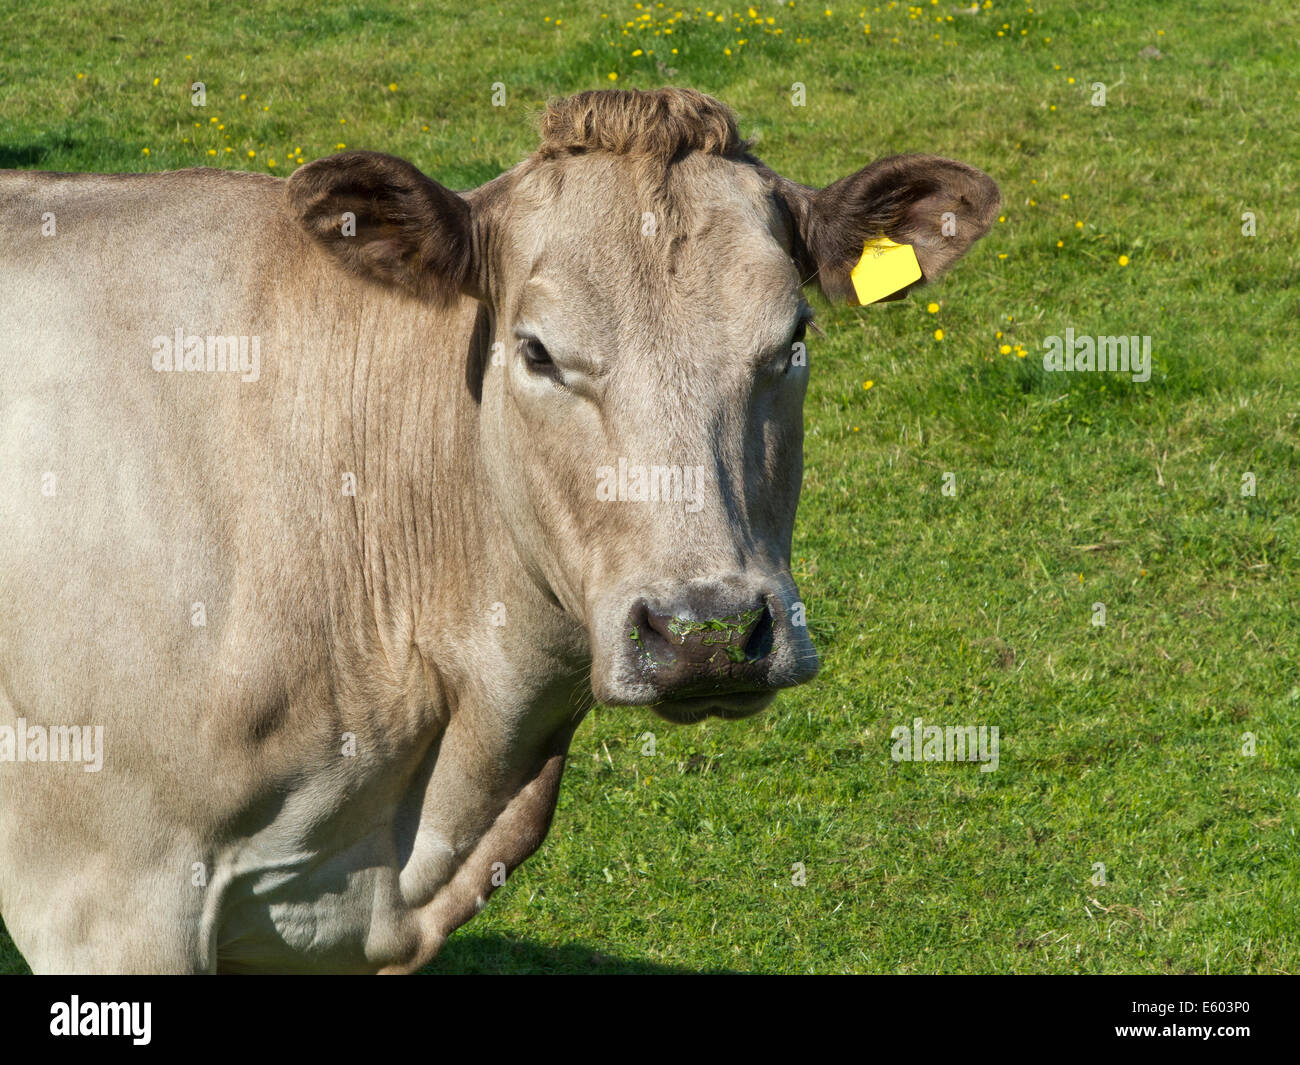 Tête et les épaules d'une vache de couleur brun pâle à tourner avec une seule caméra, vierge d'oreille jaune et l'herbe fraîche sur le museau Banque D'Images